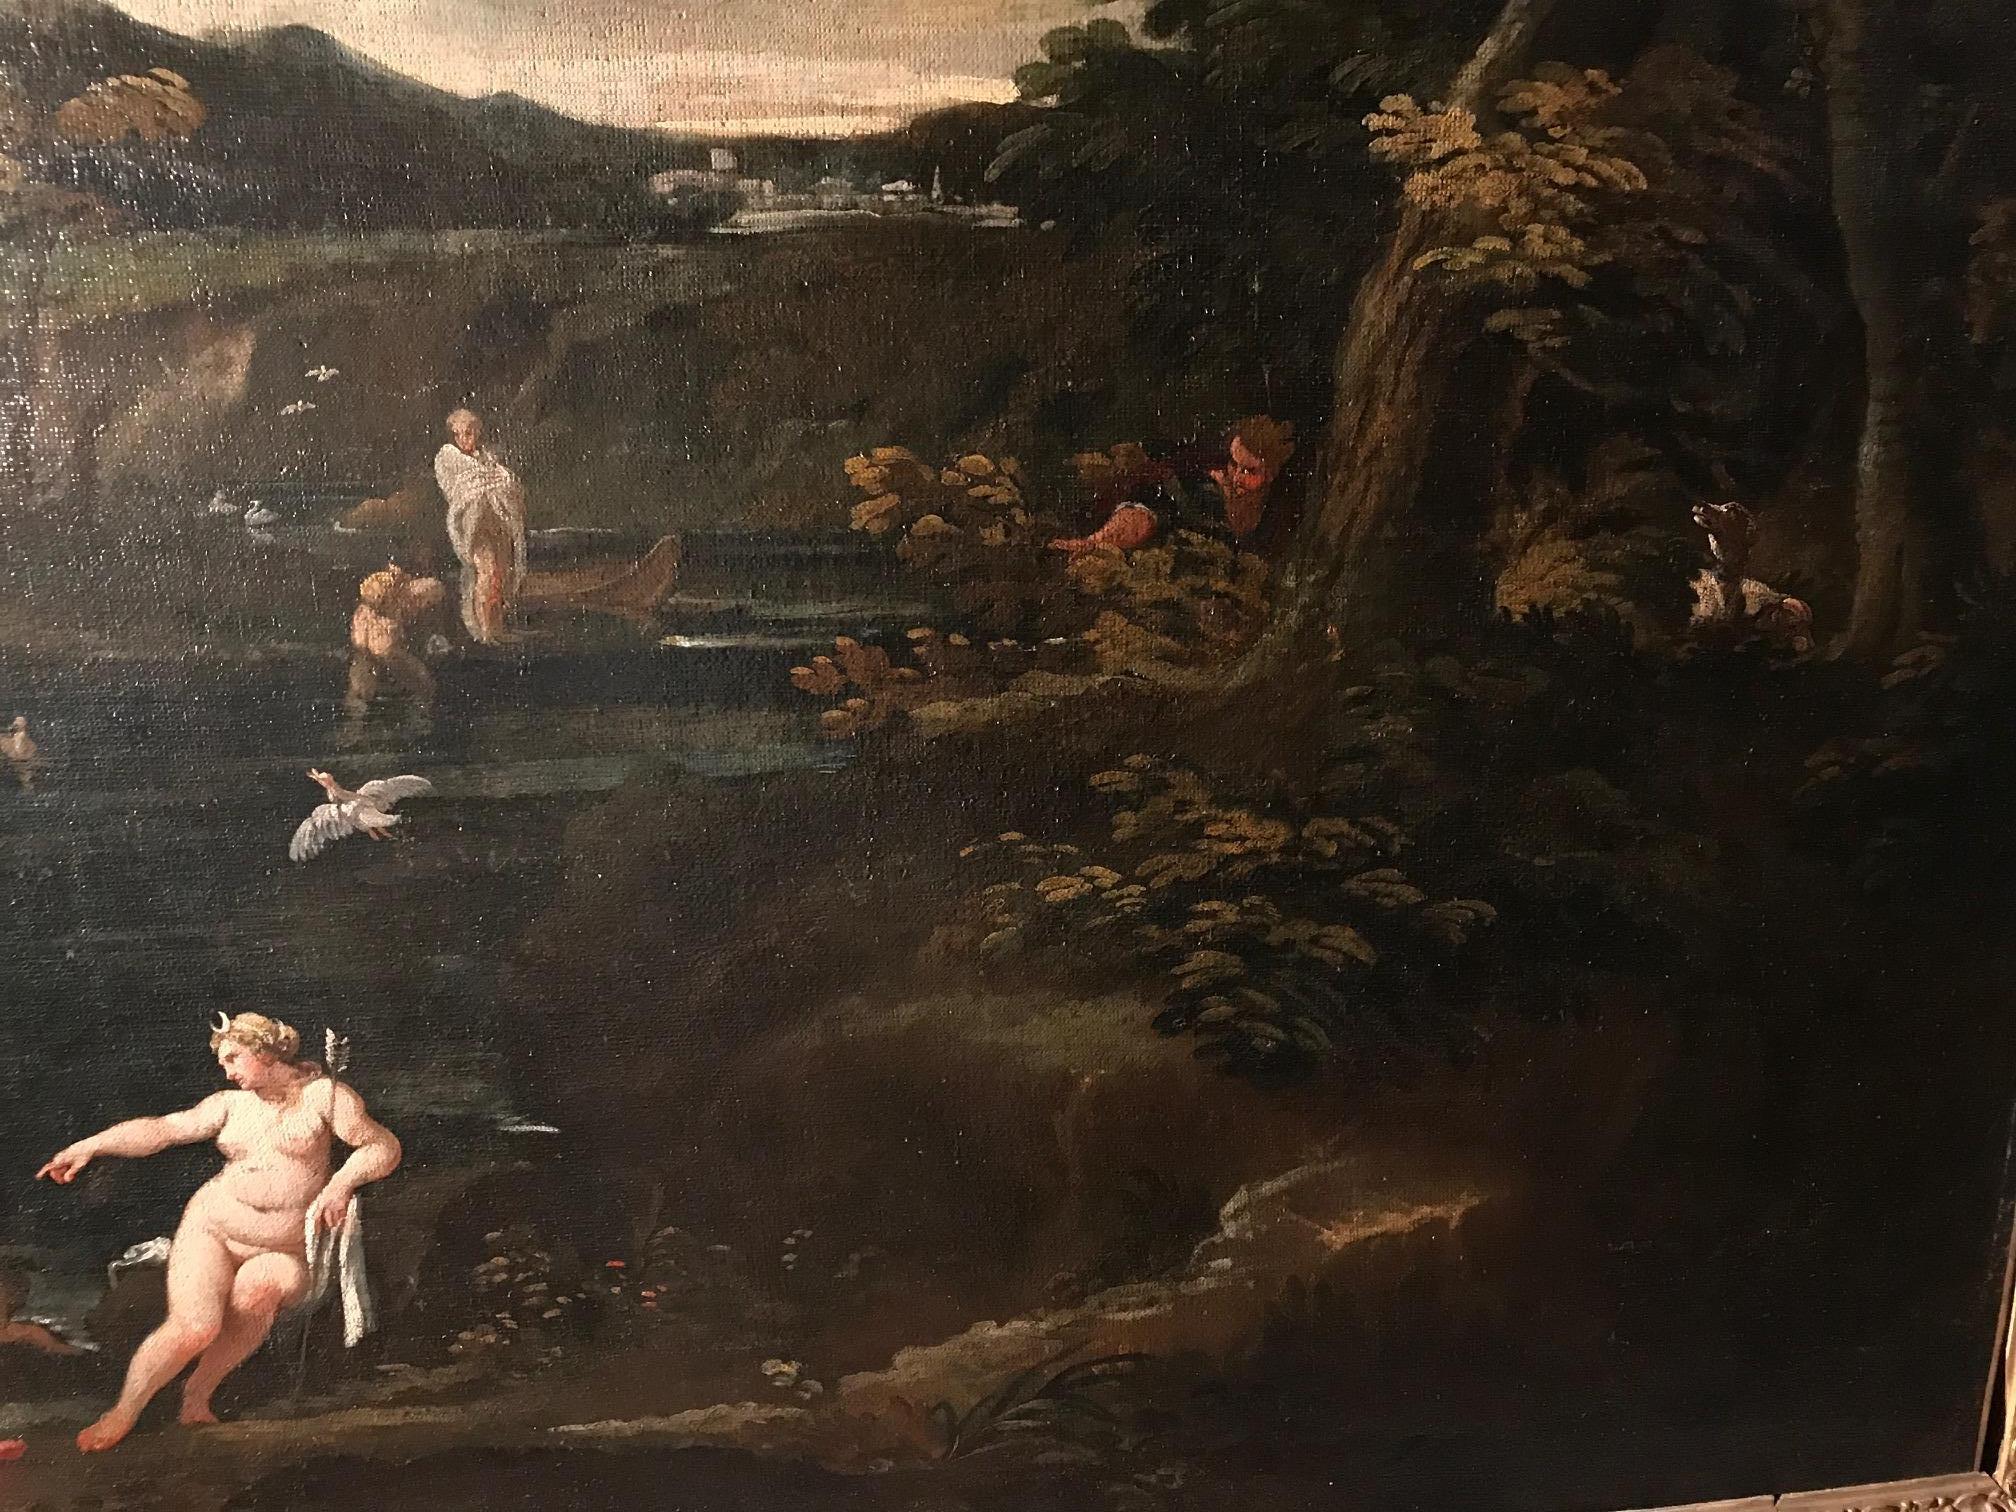  Landschaft mit einer mythologischen Geschichte von Diana und Actaeon 1610 (Schwarz), Landscape Painting, von Giovanni Battista Viola